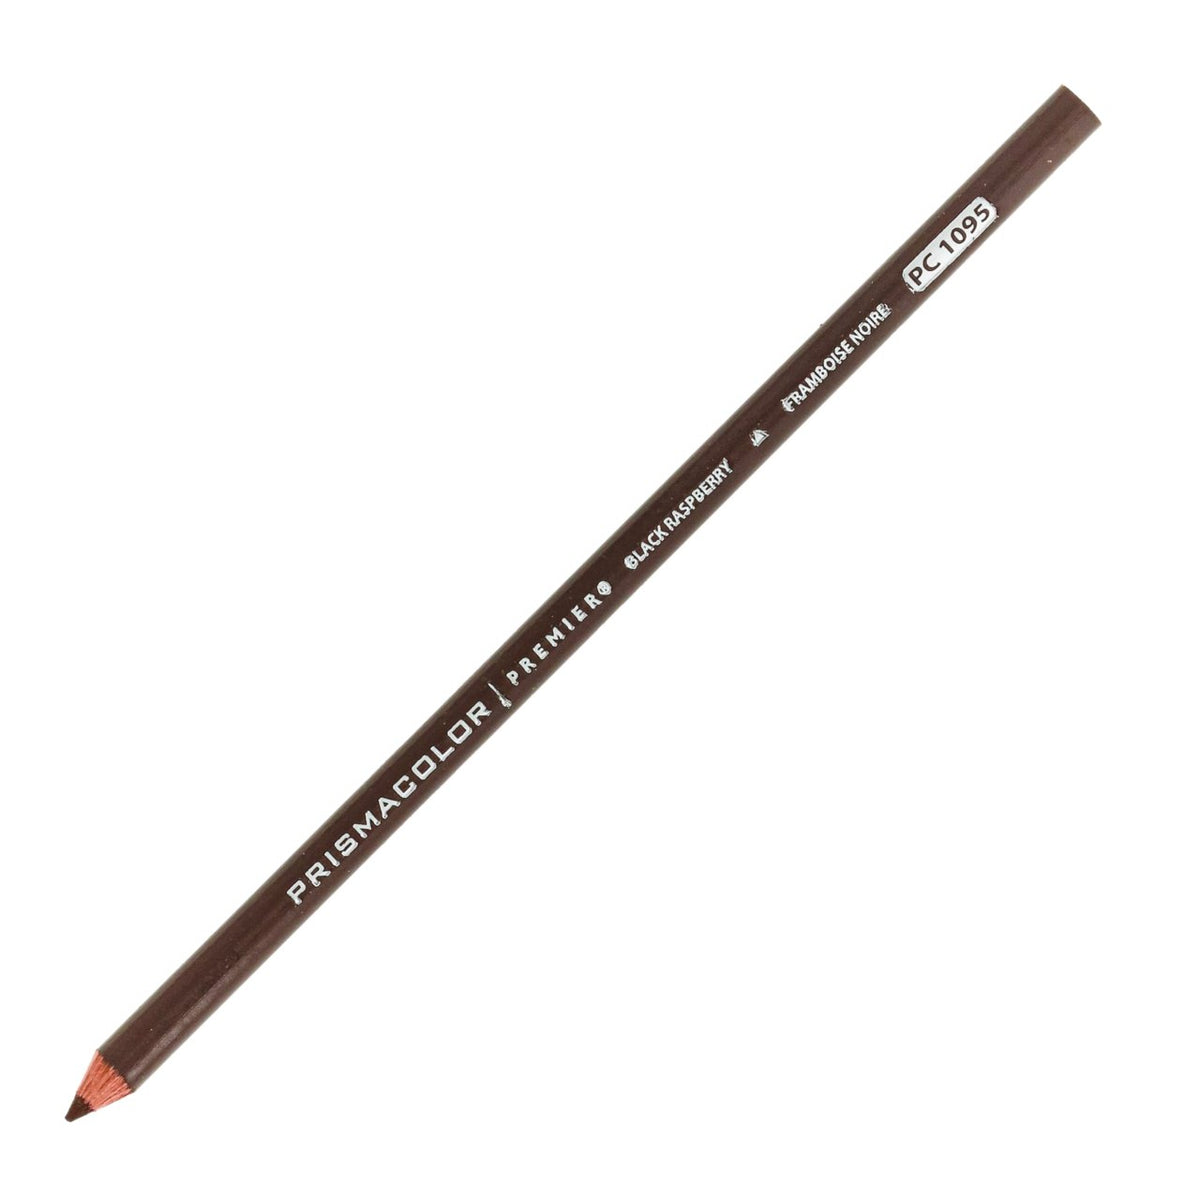  Black Colored Pencil